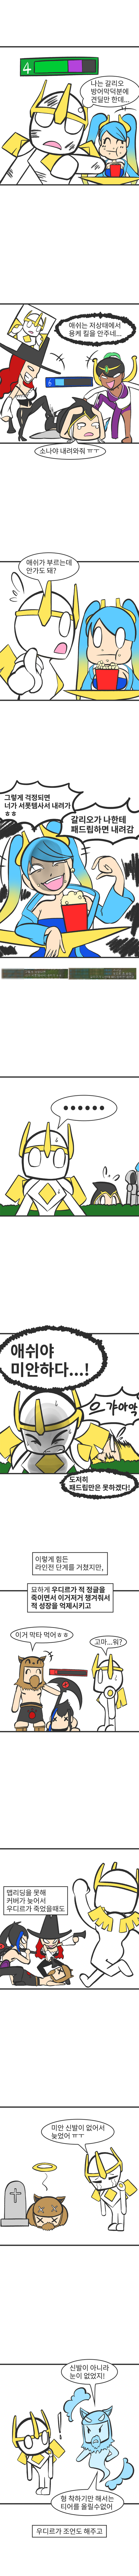 신비한팀원들3 복사.jpg